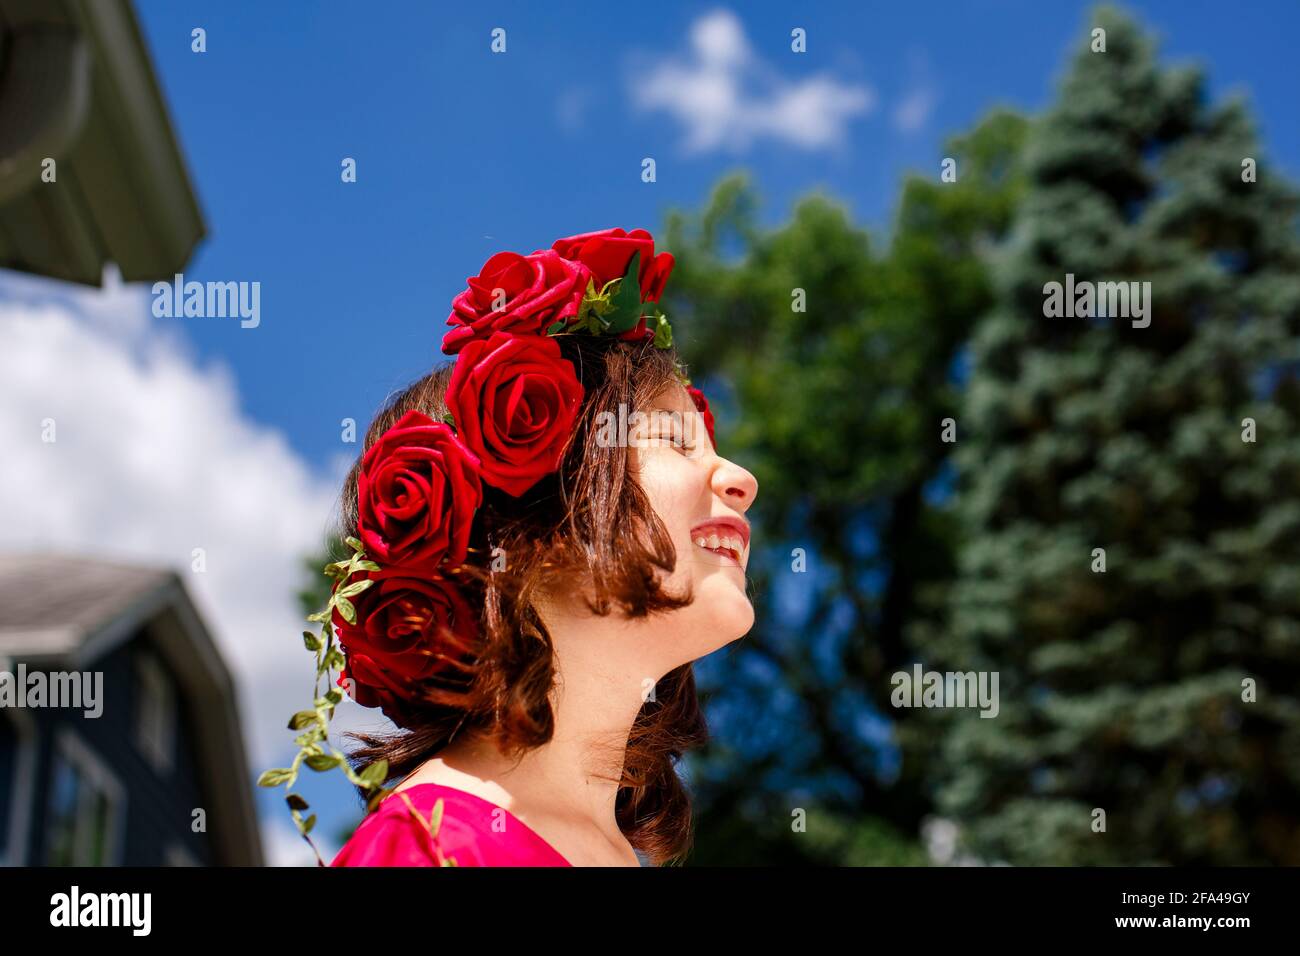 Una chica hermosa con una corona de rosas sonríe debajo un cielo azul Foto de stock